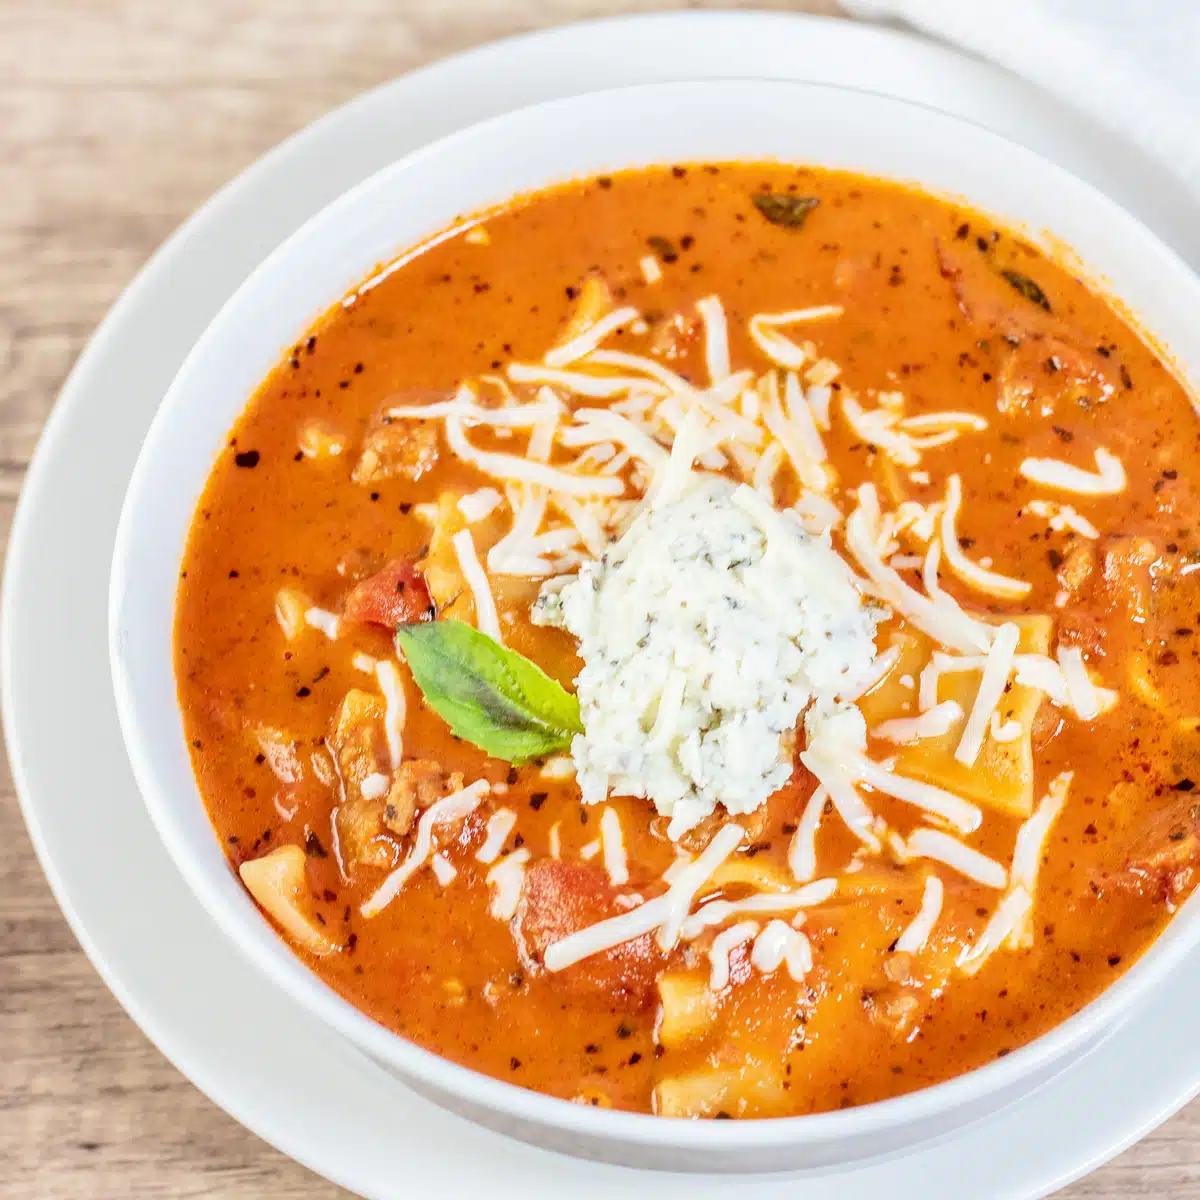 Przepis na wolnowarową zupę lasagne ze szpinakiem i śmietaną stanowi obfity posiłek.